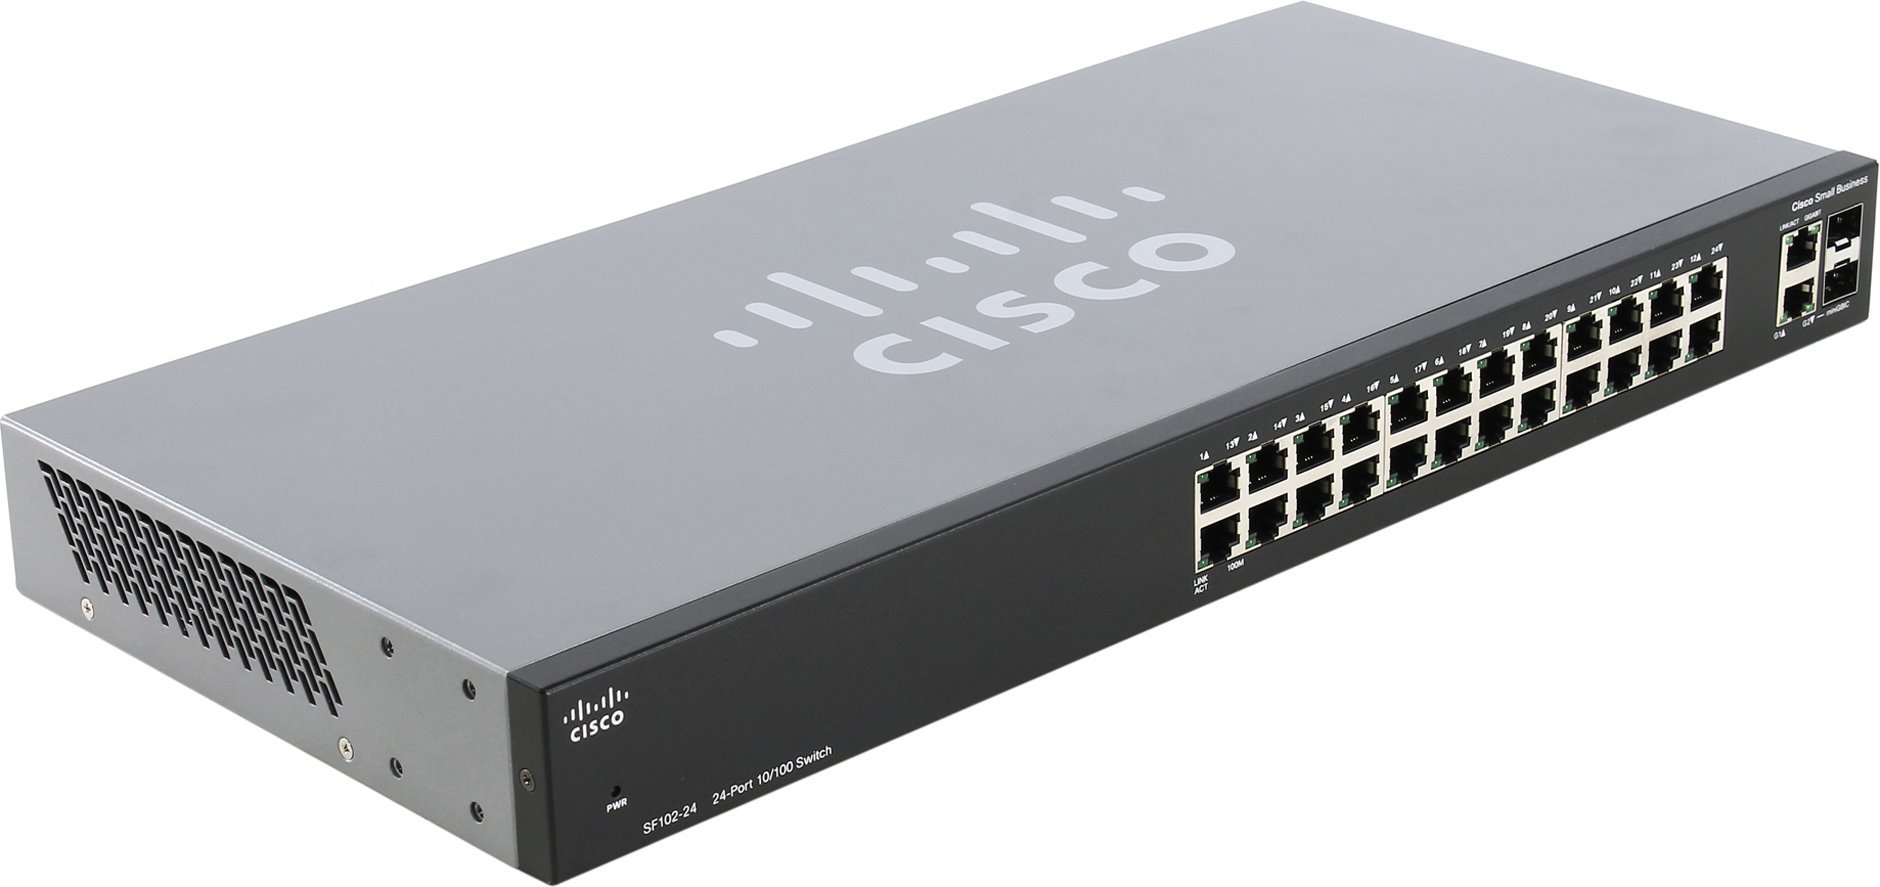 O que há de novo se tornou conhecido sobre o ataque de 200 000 switches de rede da Cisco?